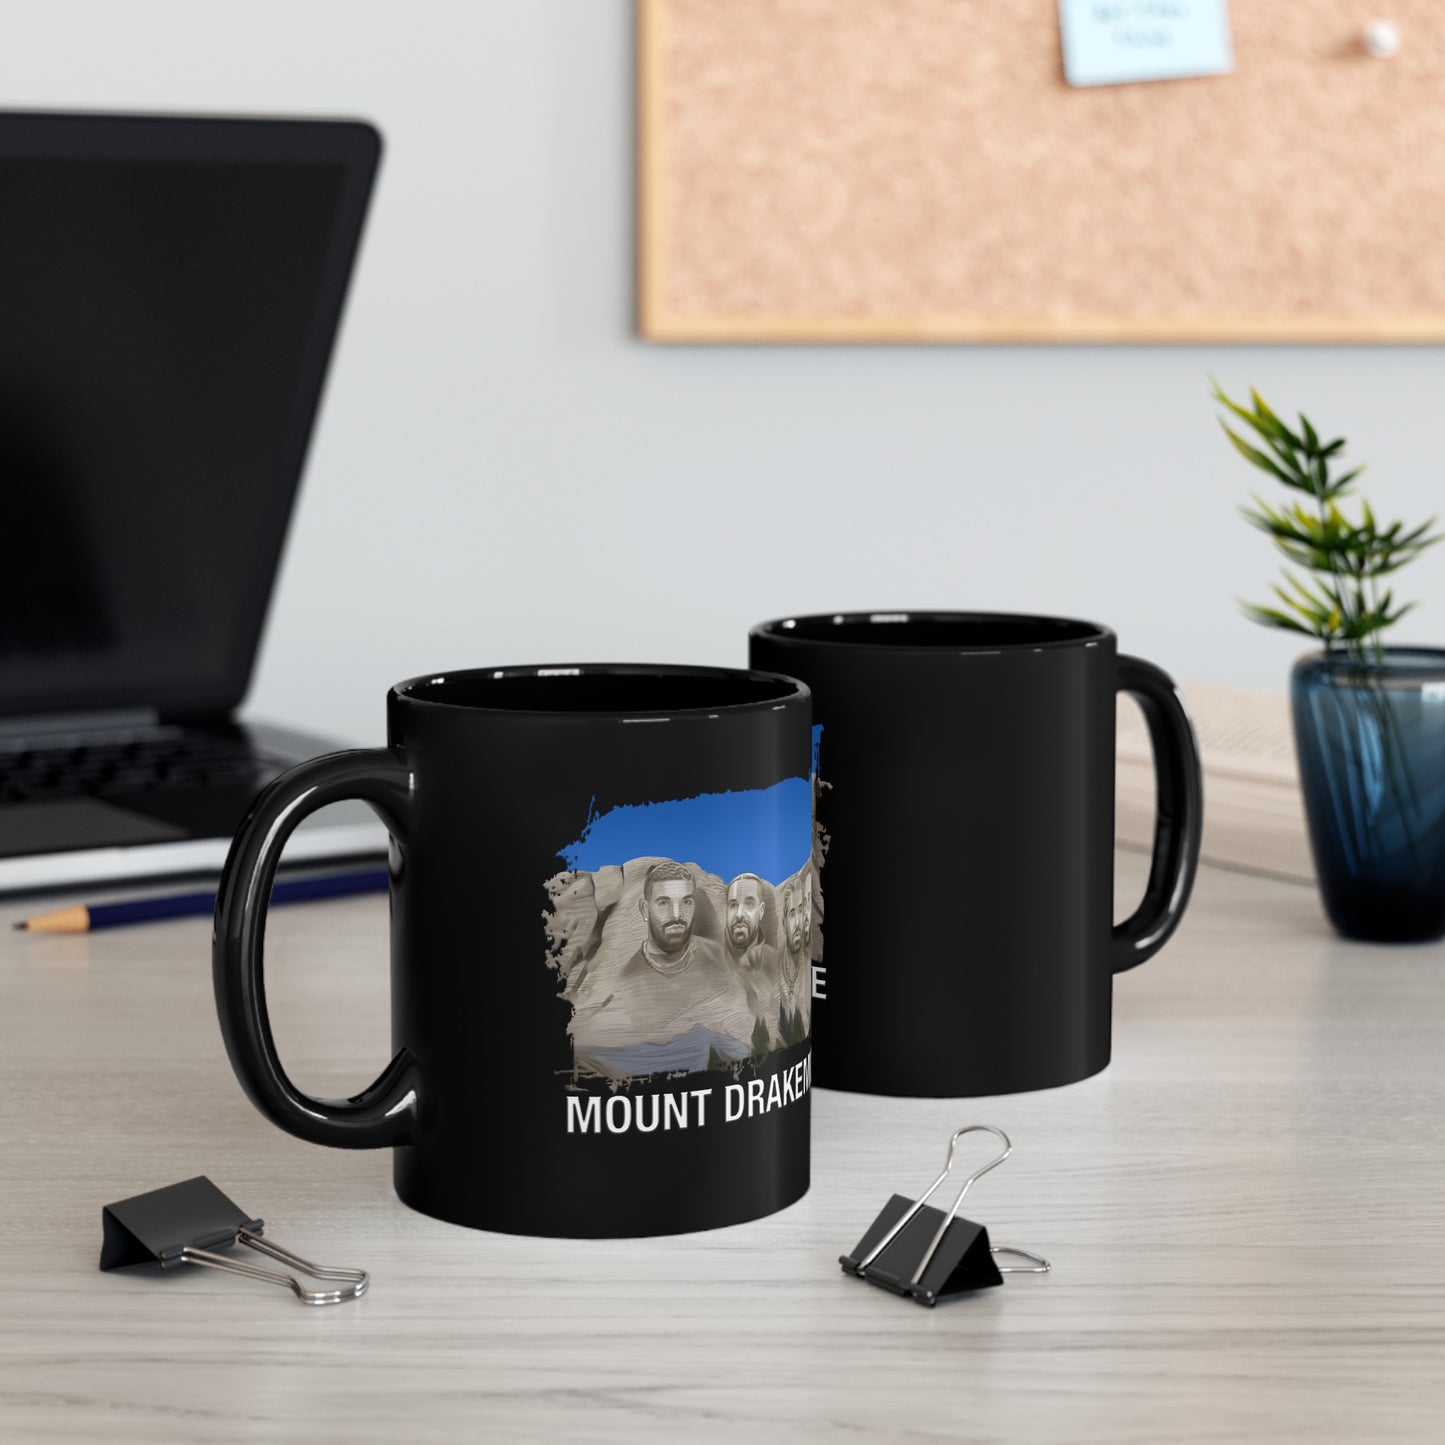 Mount Drakemore Mug